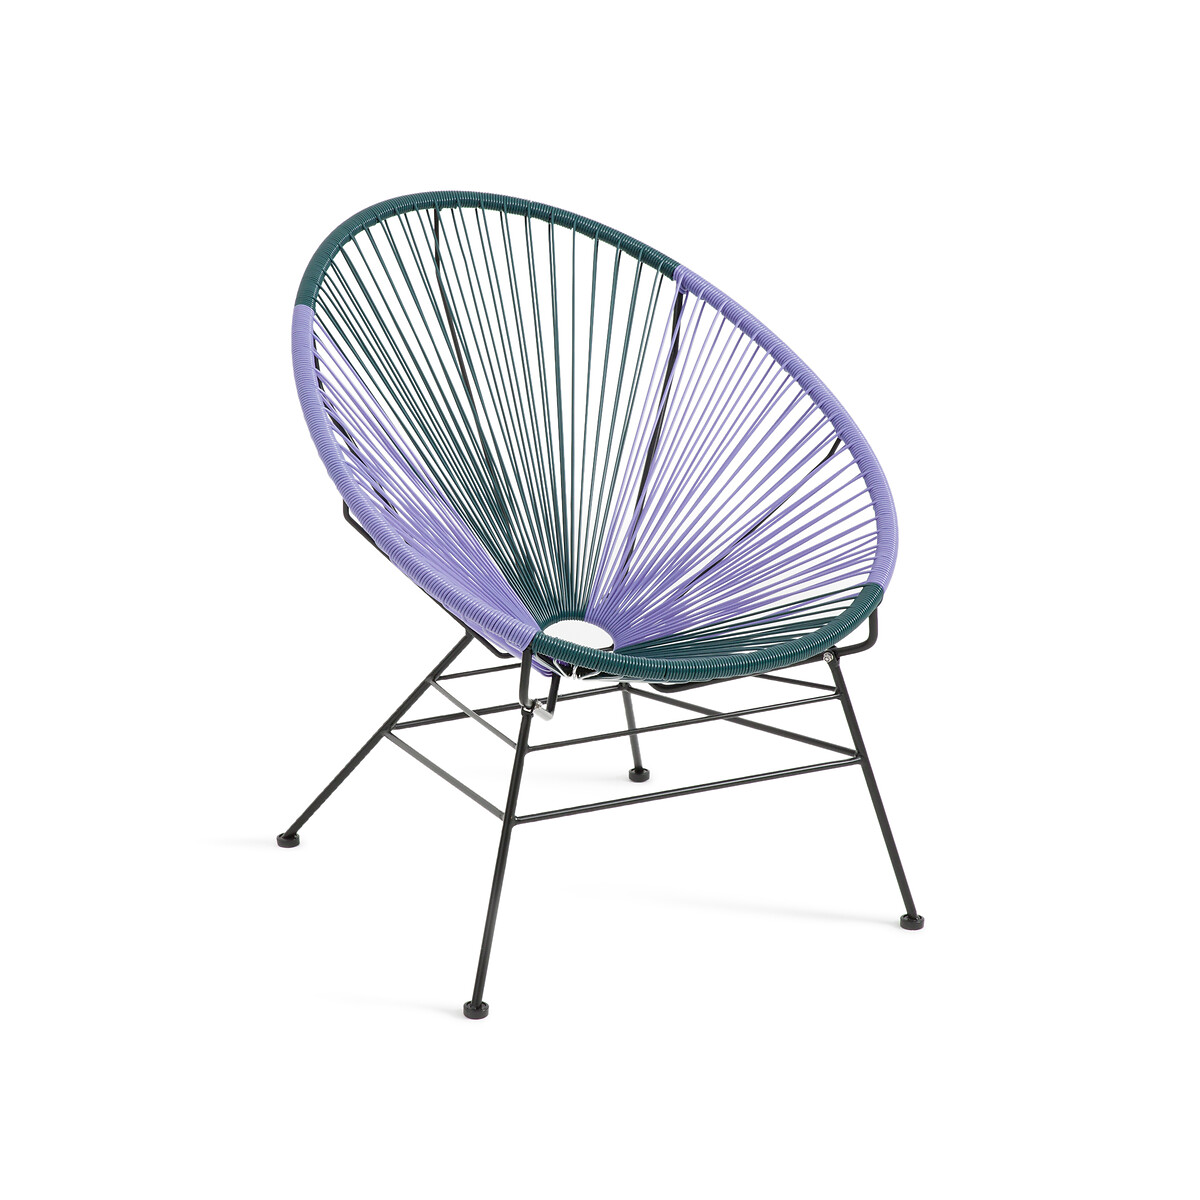 Кресло садовое из плетеного пластика Selya единый размер фиолетовый кресло садовое из стали и полимера sabby единый размер бежевый